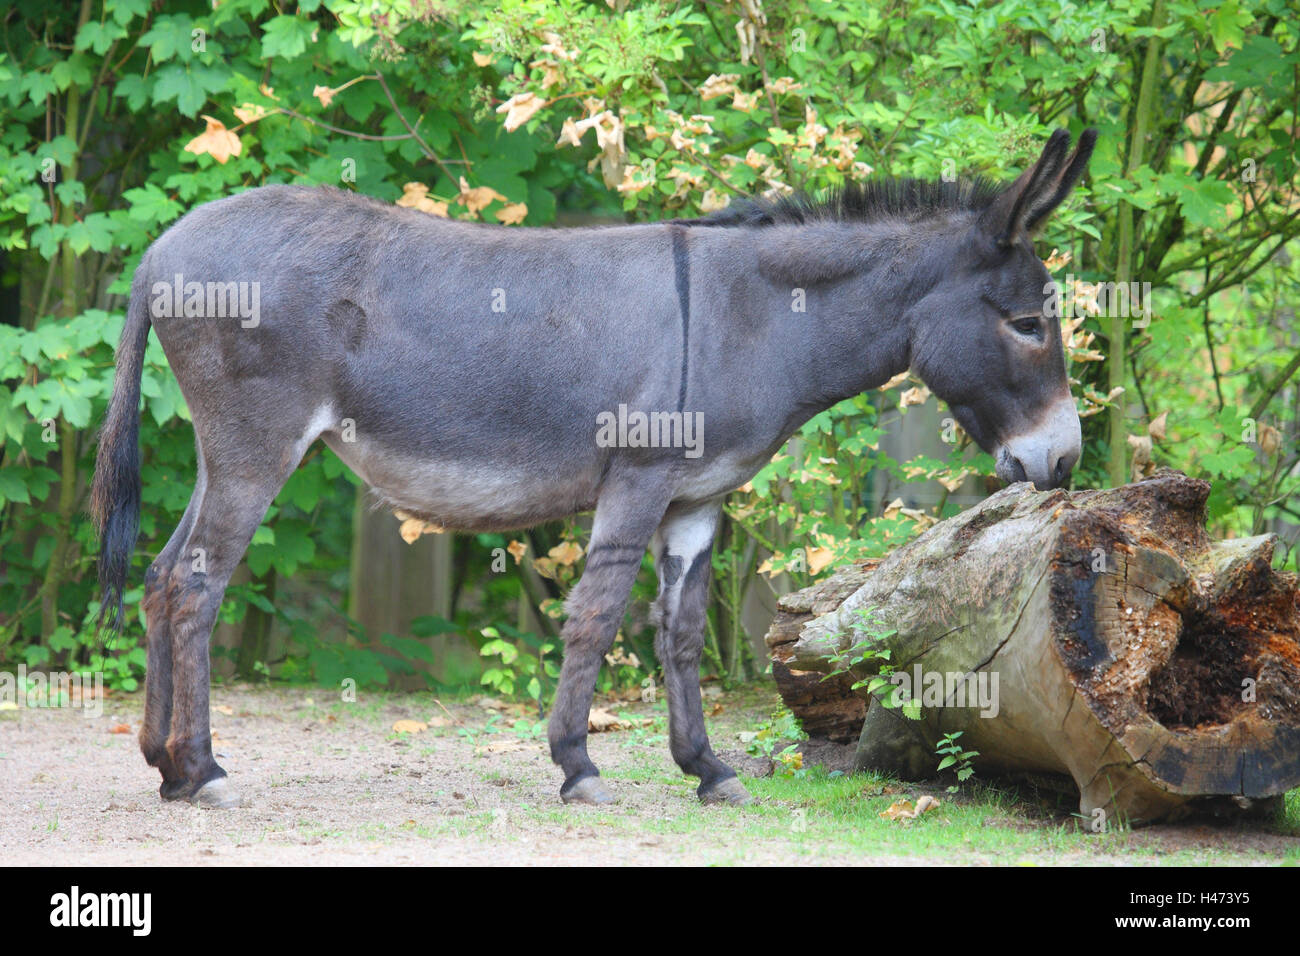 House donkey, Stock Photo